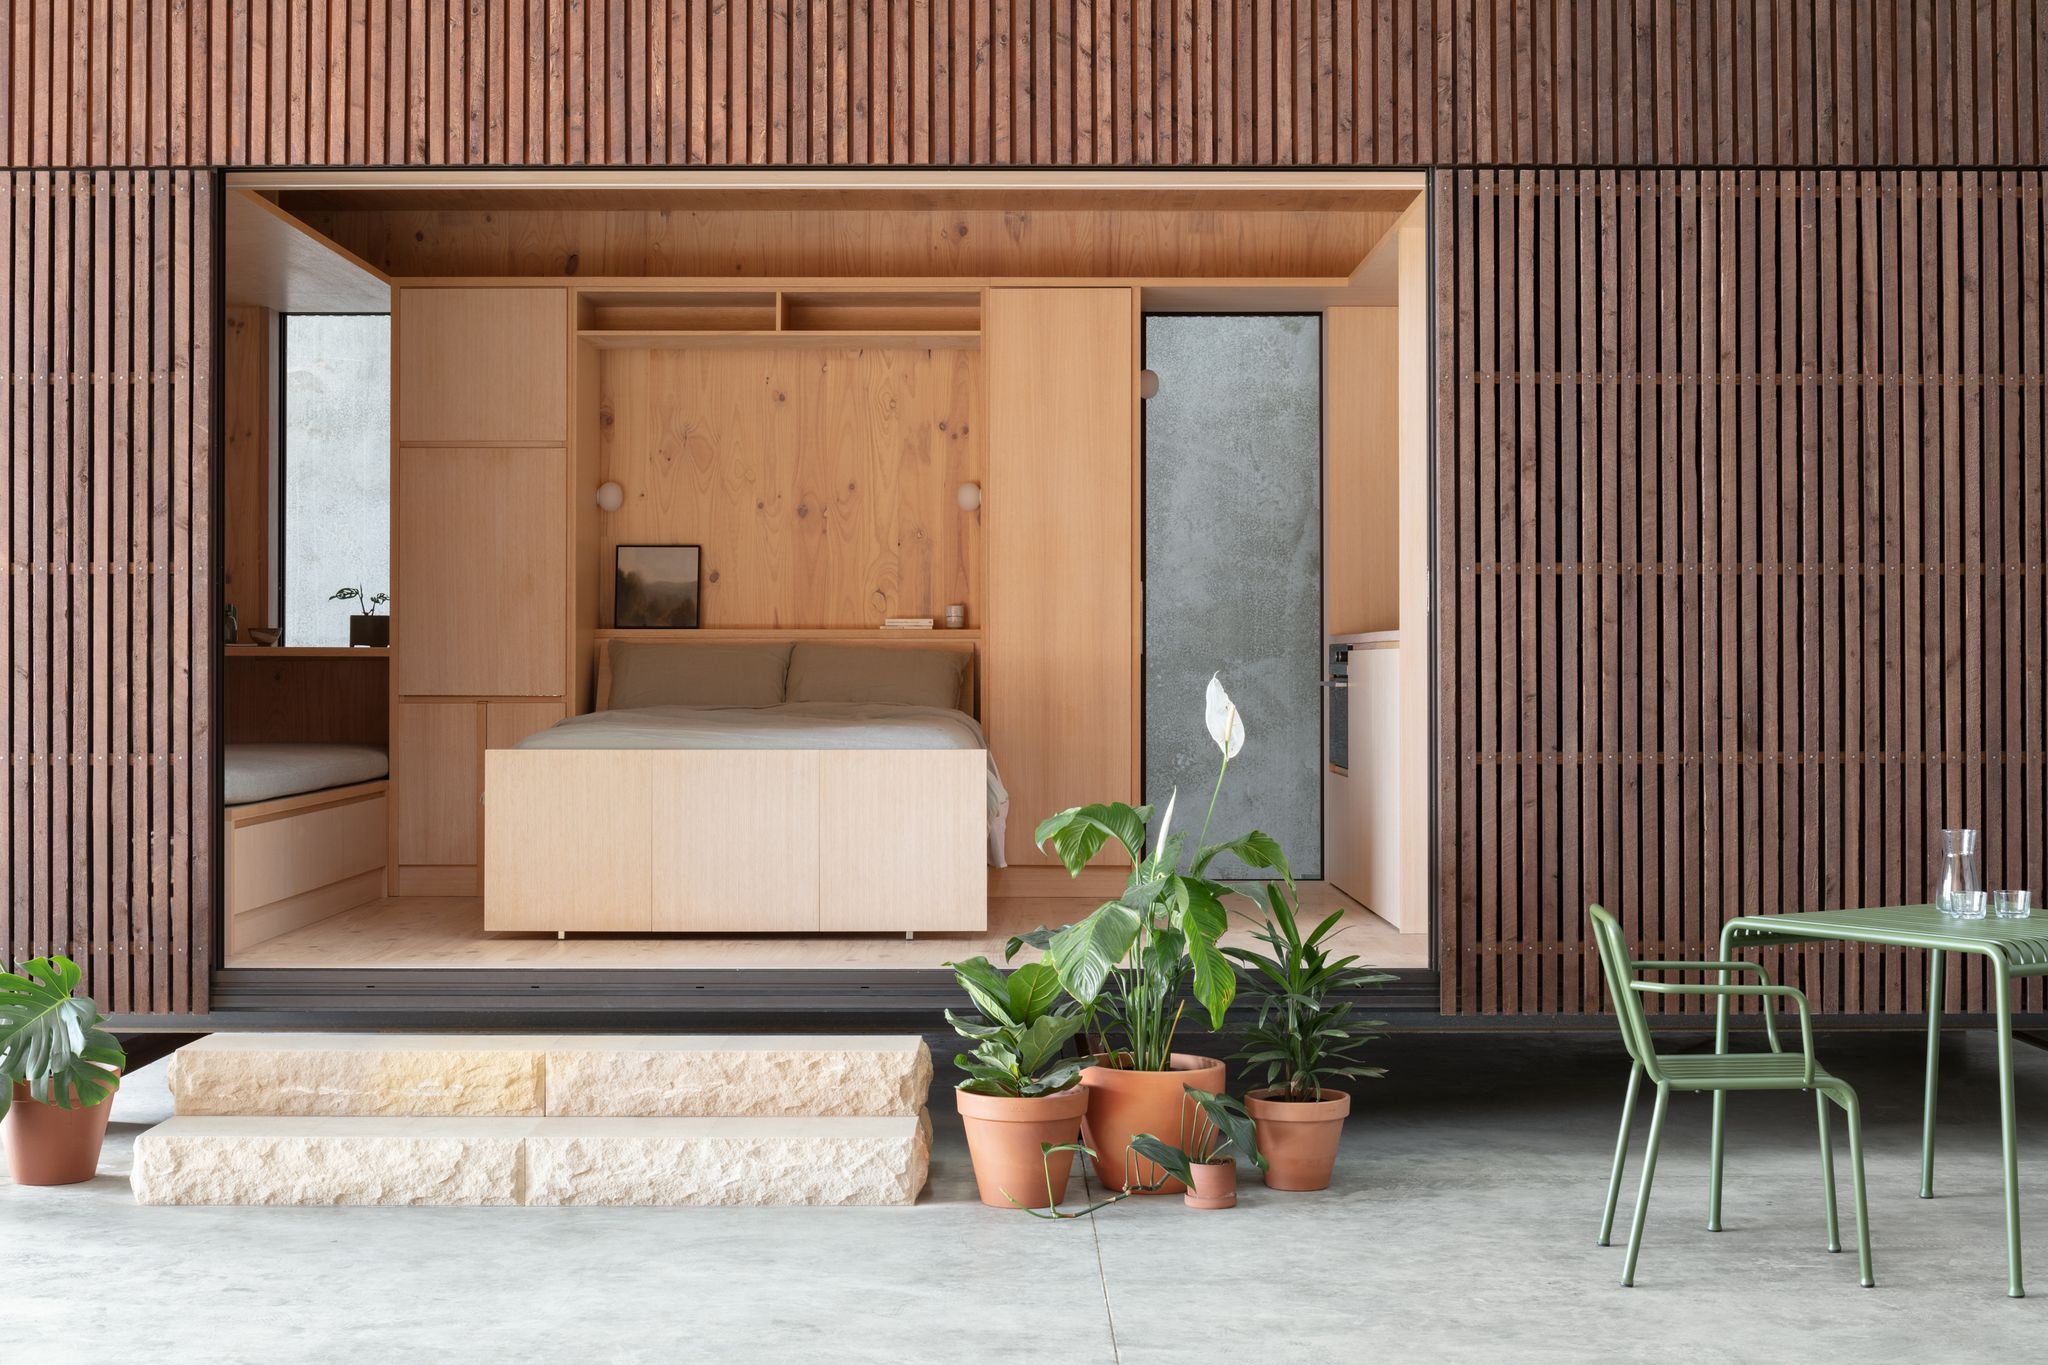 La MINI CASA prefabricada de 64 m2 perfecta para familias pequeñas por  menos de 15.000 €